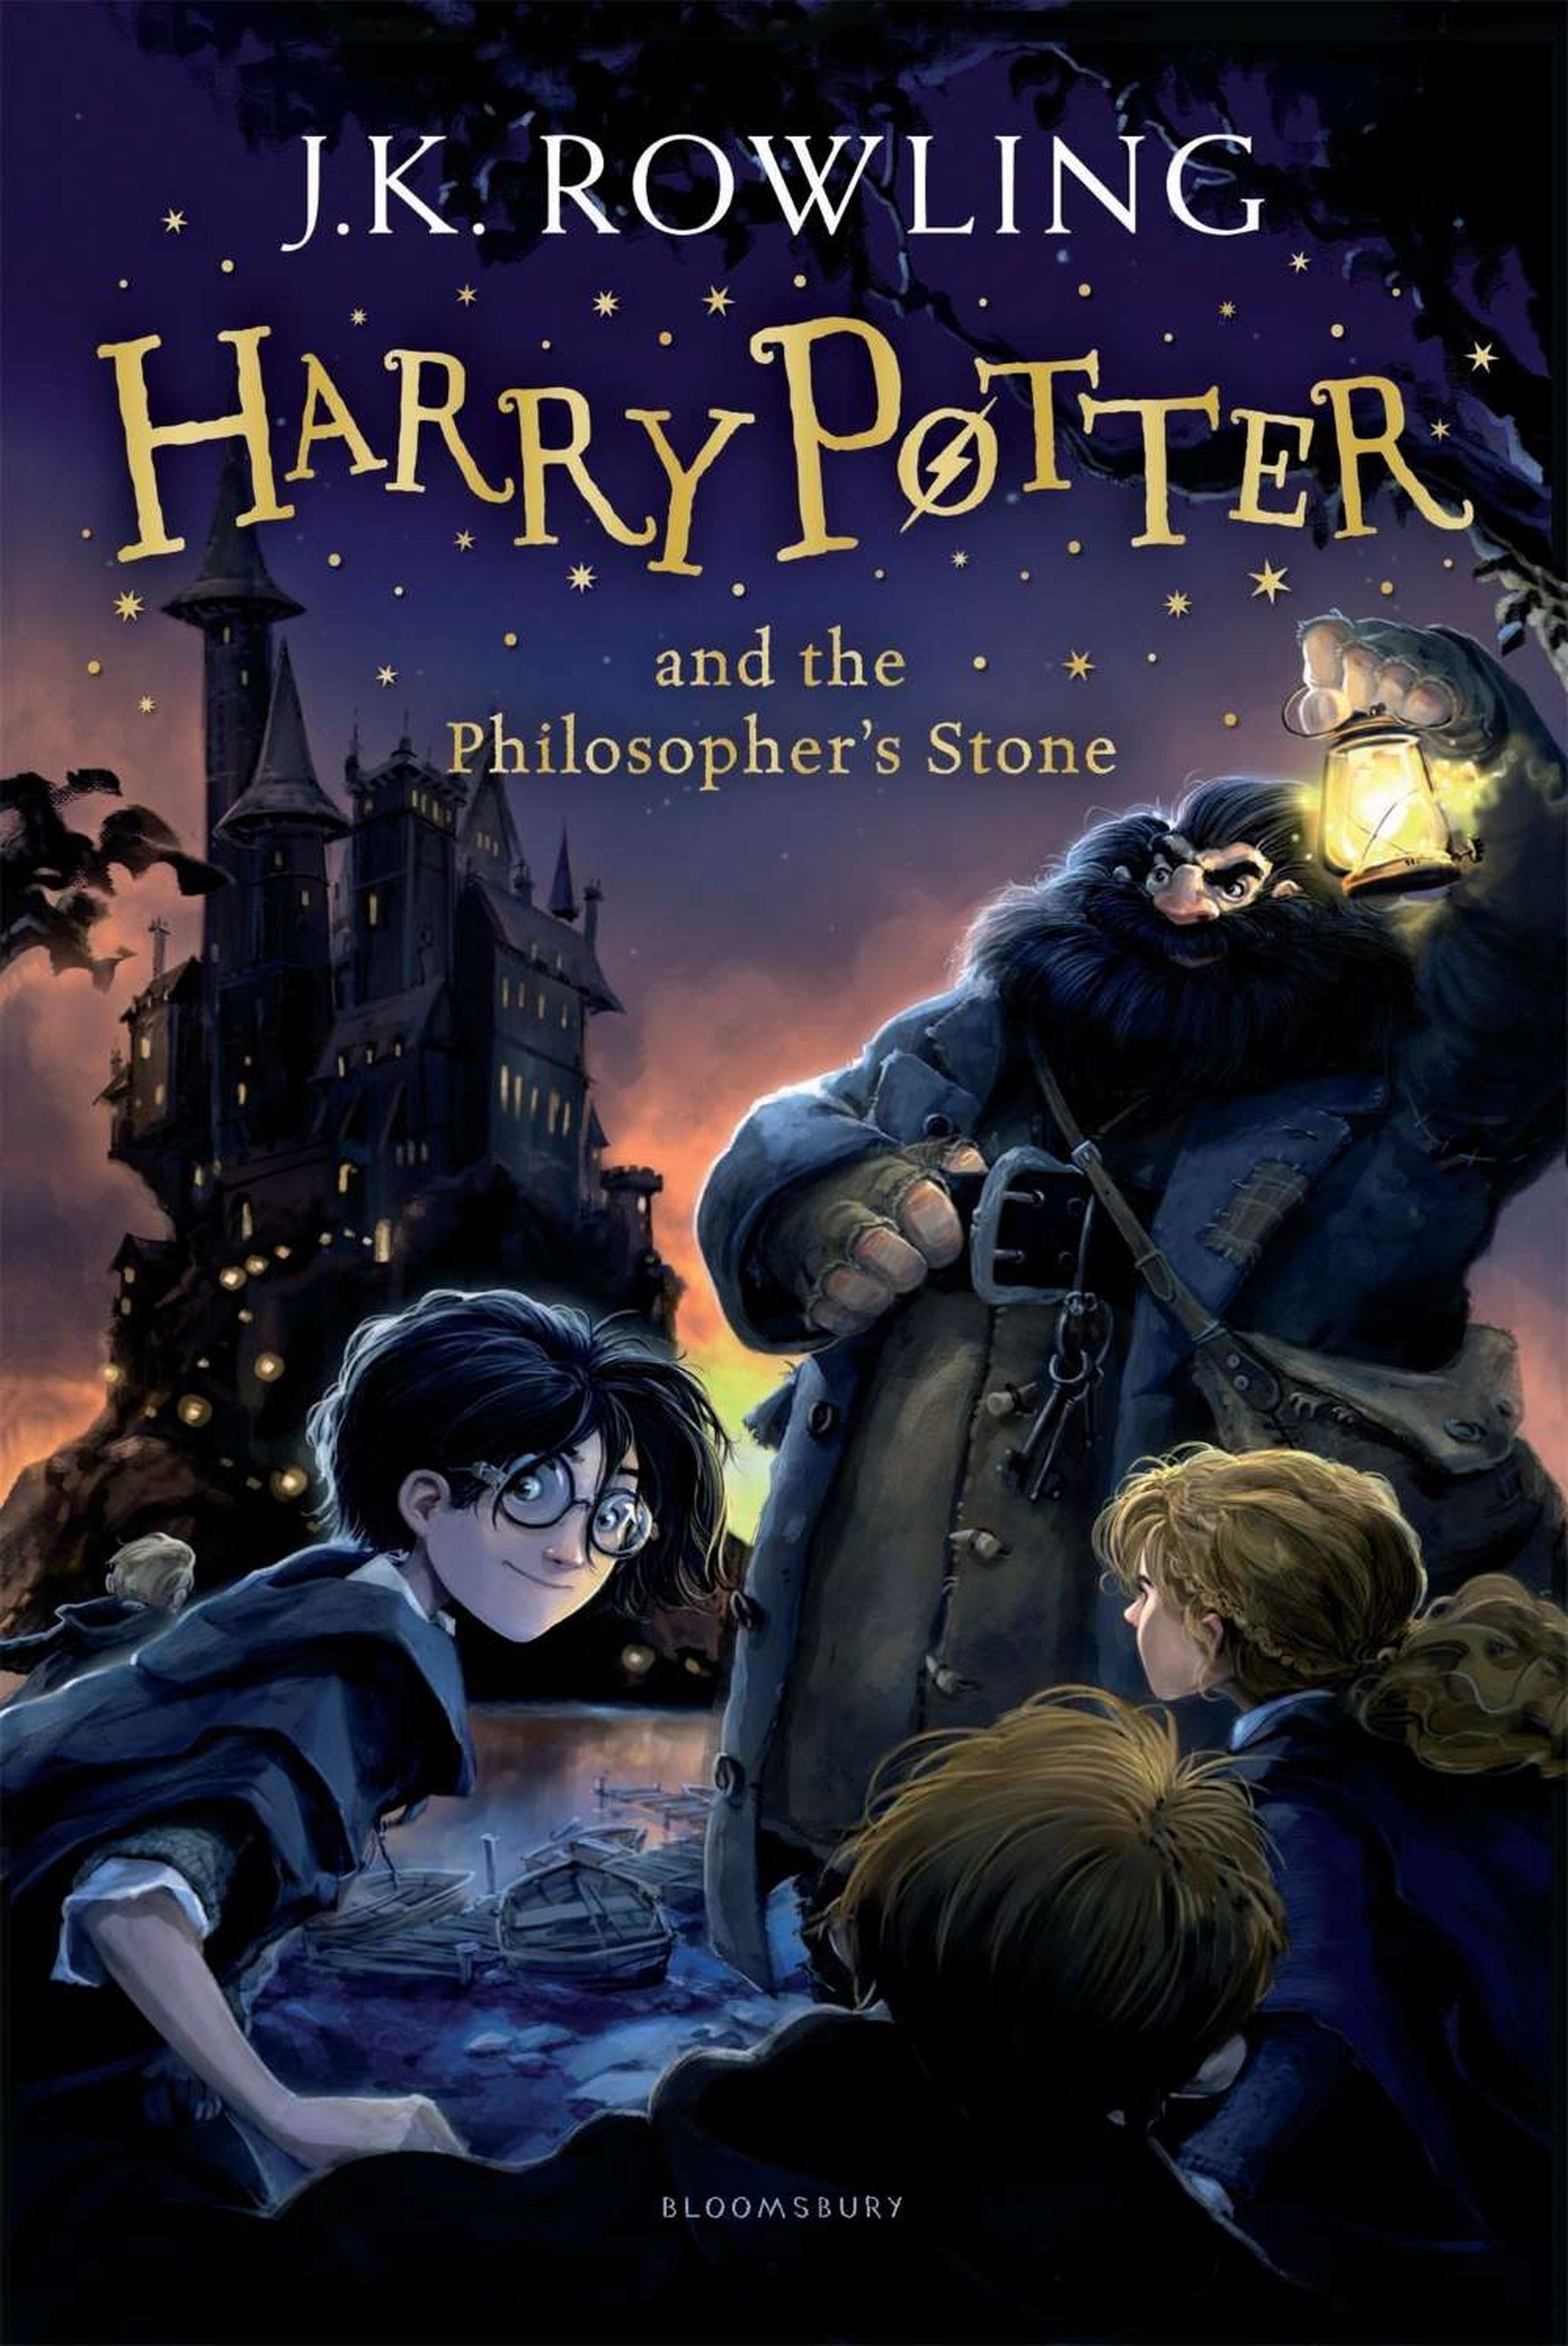 Harry potter y la piedra filosofal